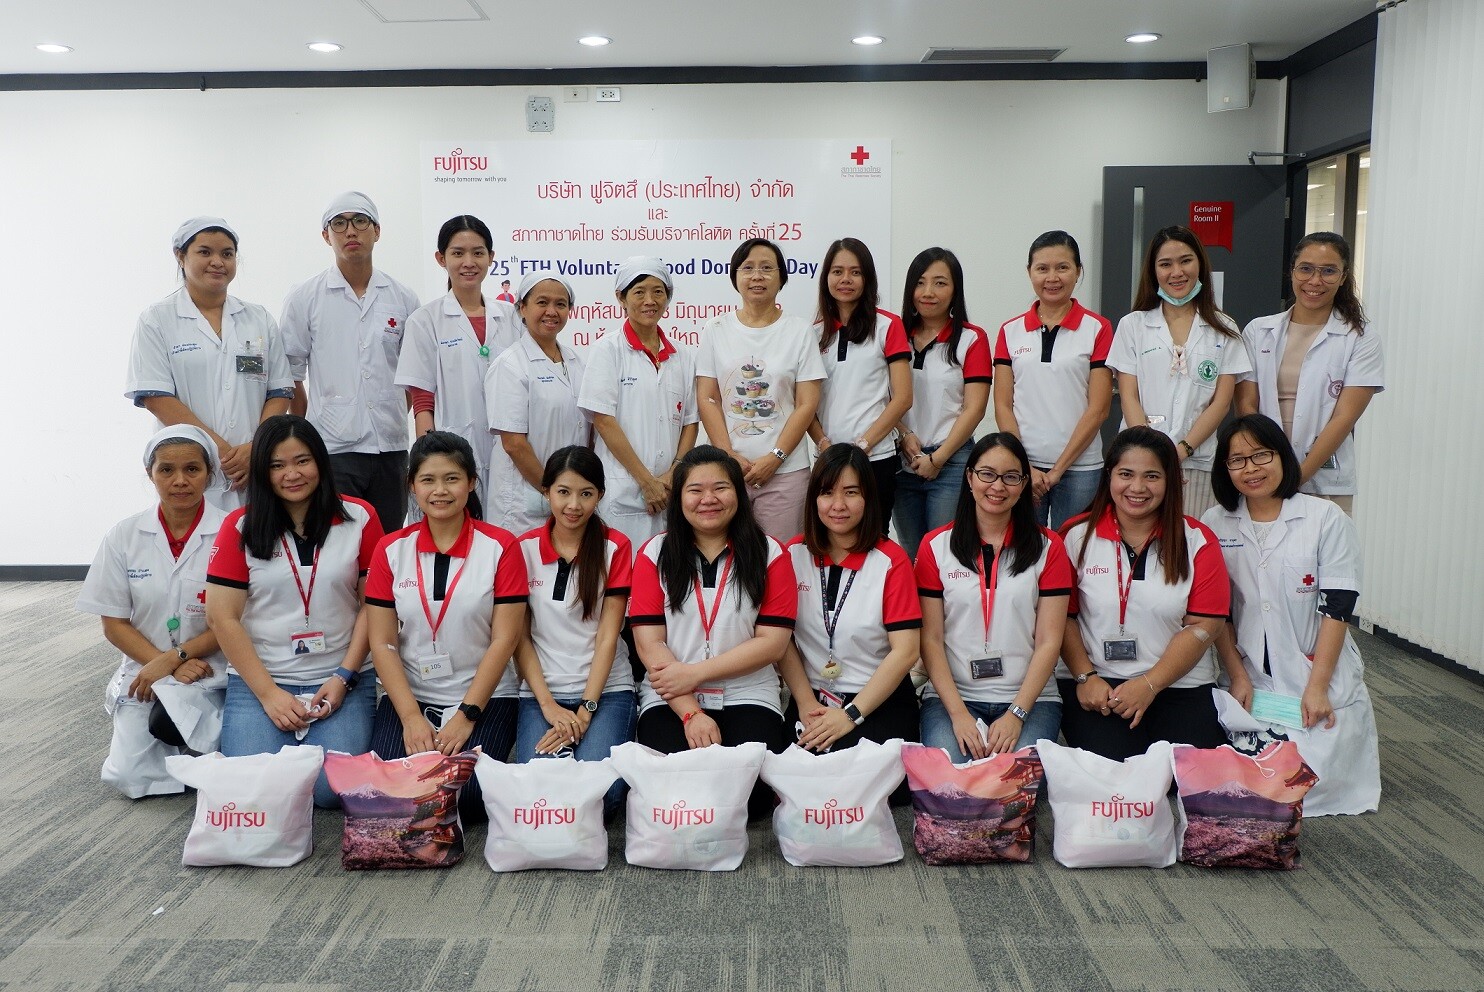 ฟูจิตสึรวมพลังจัดกิจกรรมเพื่อสังคม “The 25th  FTH Voluntary Blood Donation”  ร่วมบริจาคโลหิตให้กับสภากาชาดไทย ครั้งที่ 25